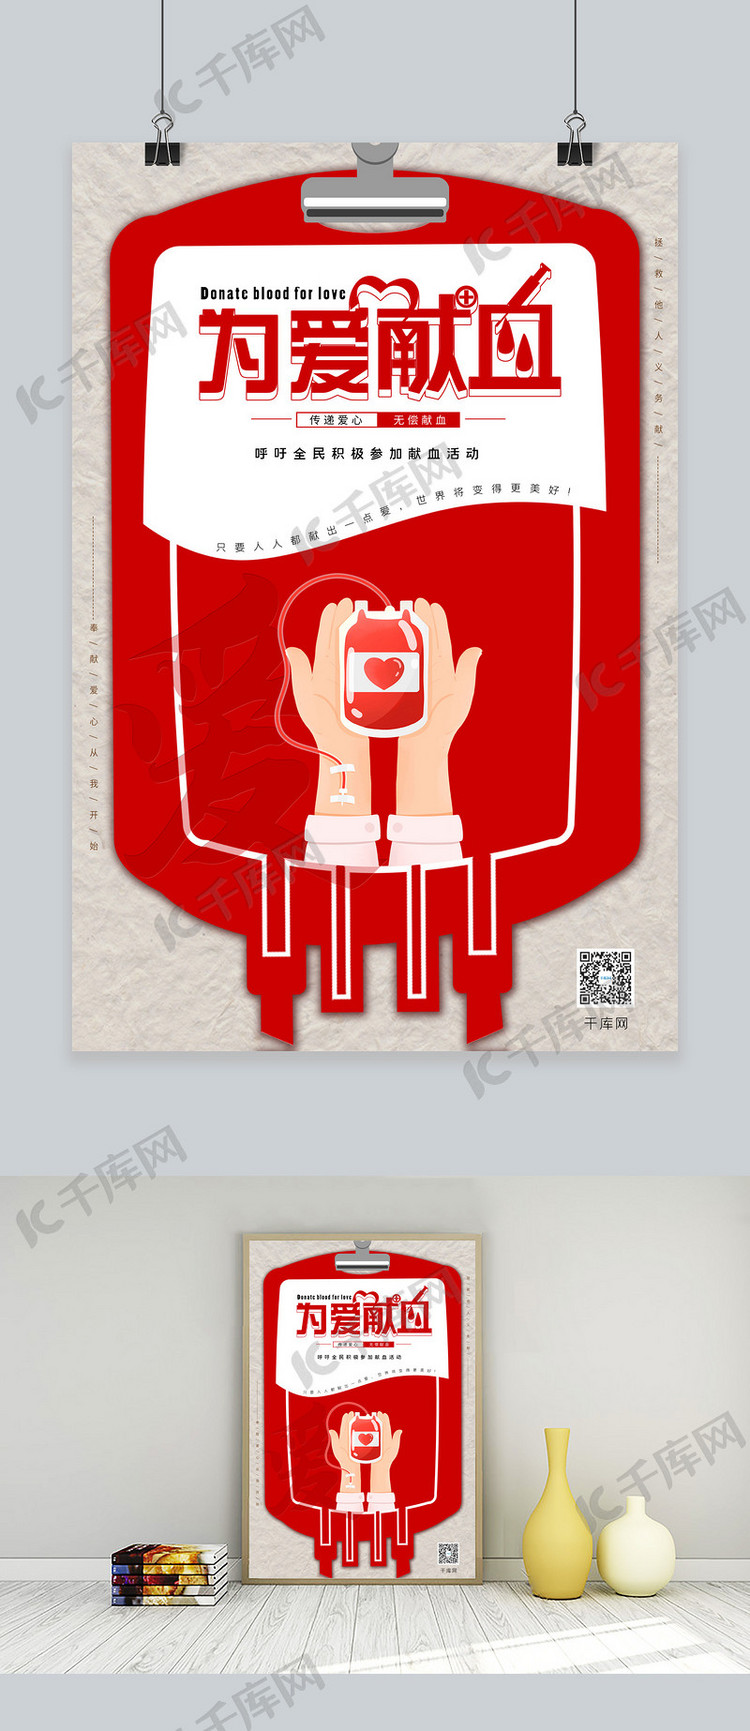 为爱献血公益活动血袋红色创意纸纹海报